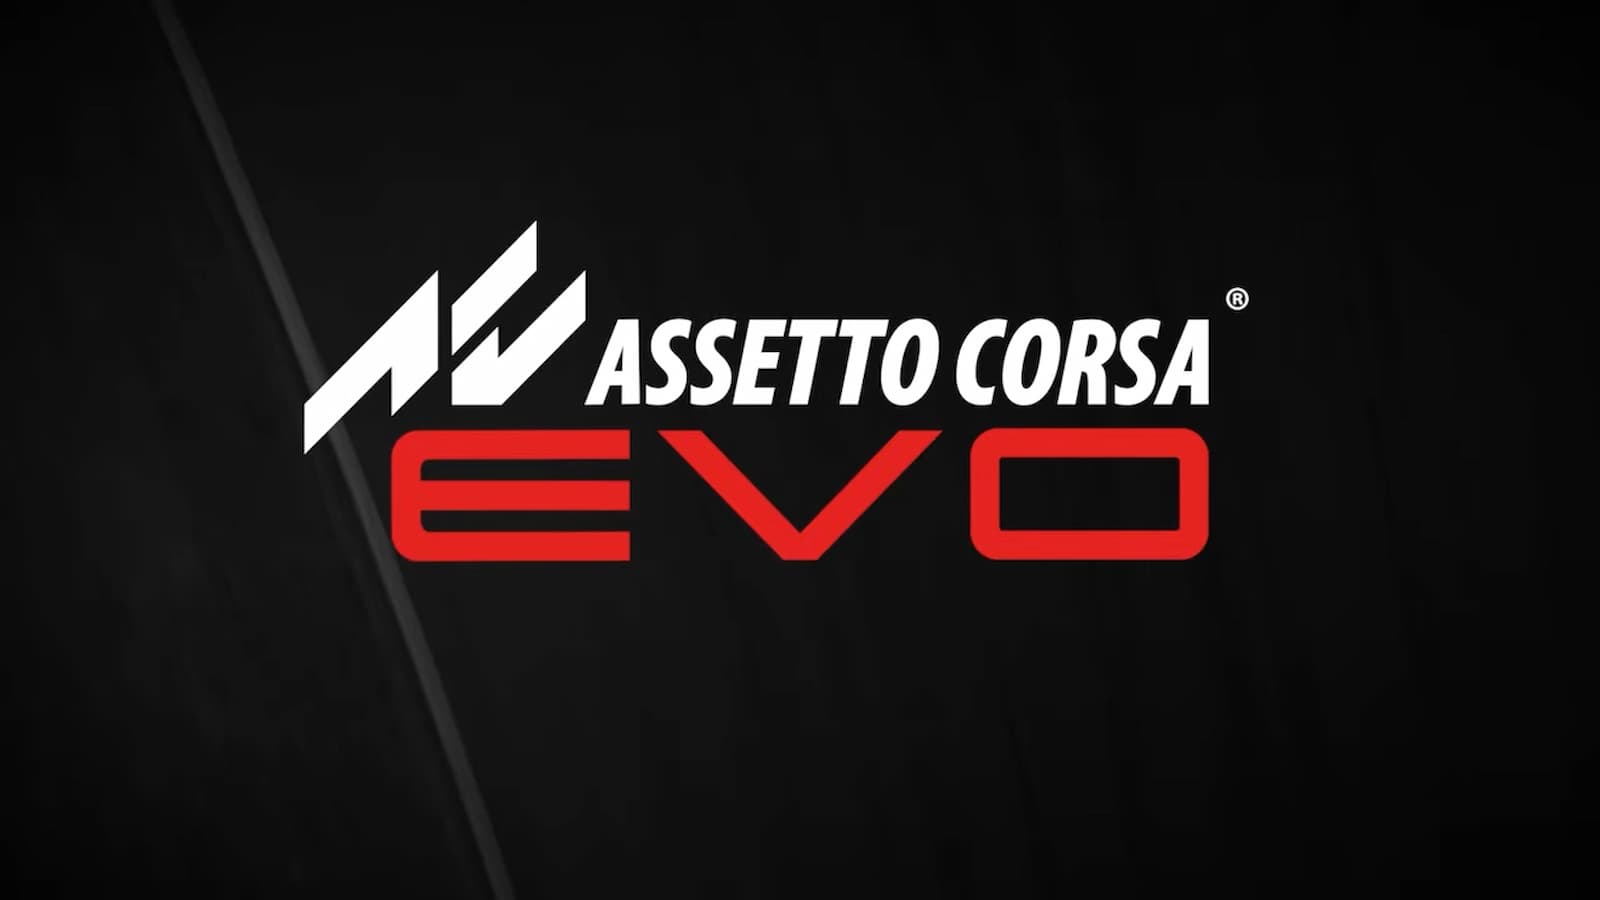 Assetto Corsa Evo logo